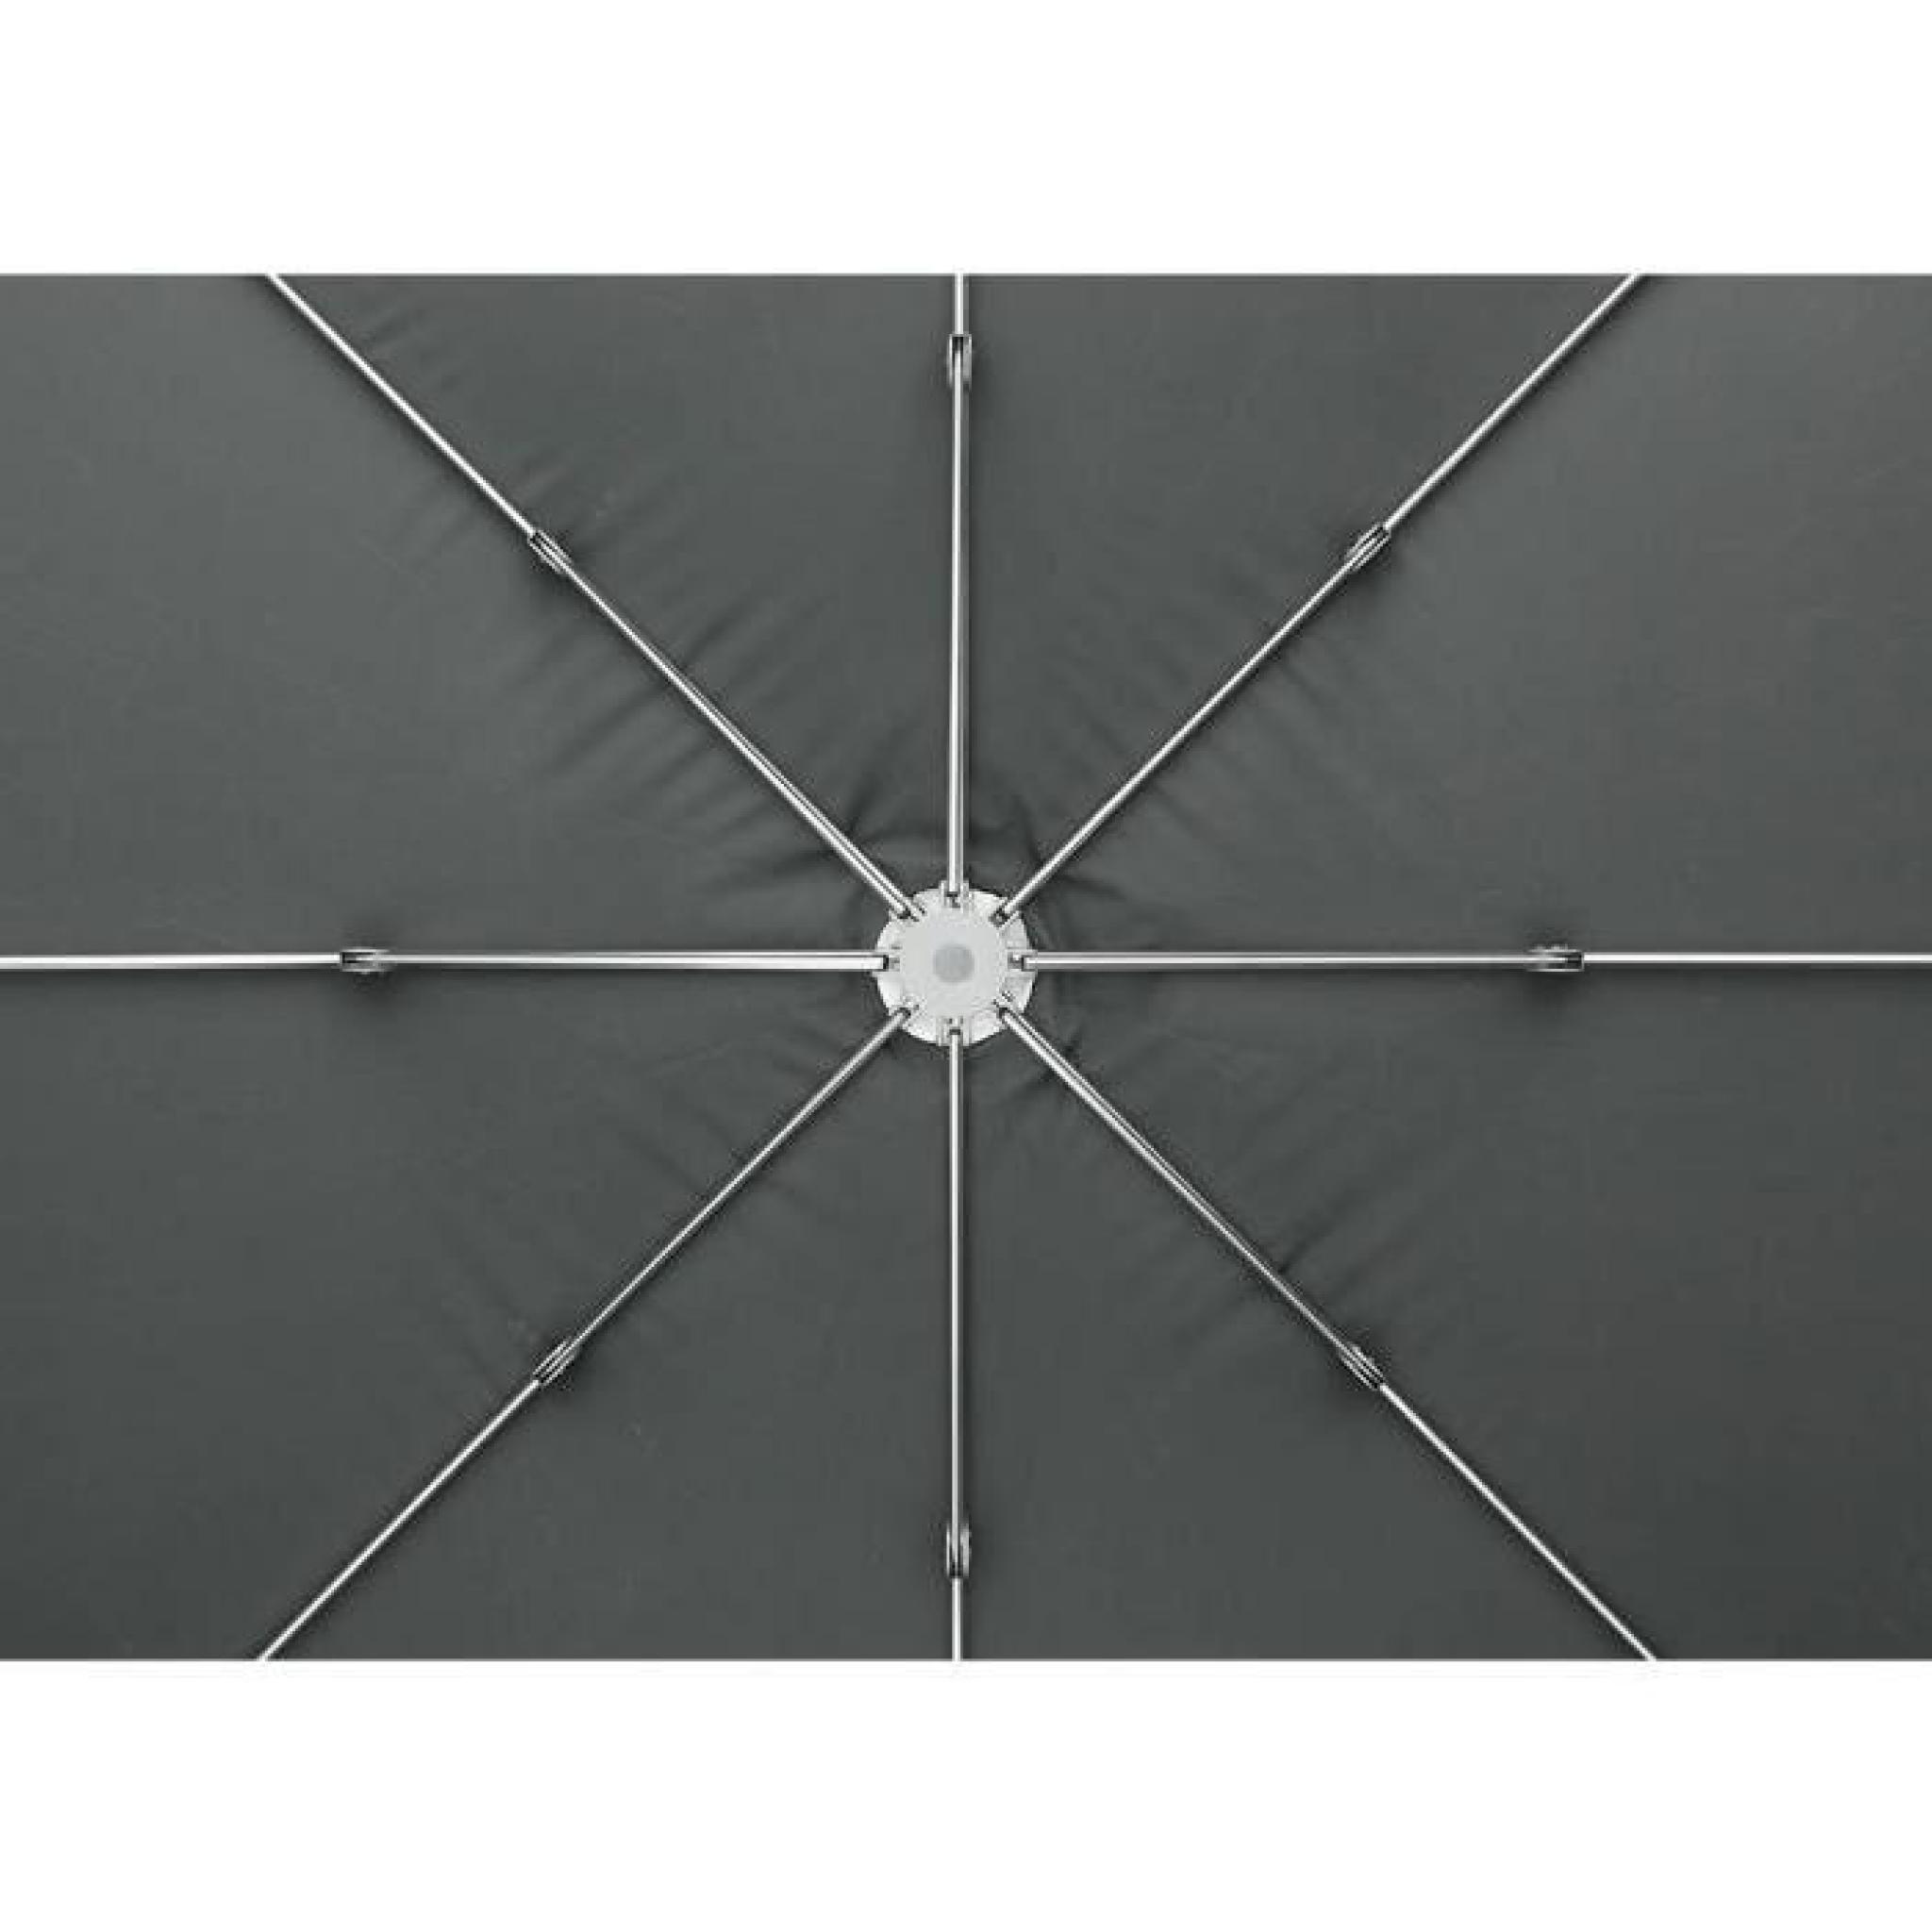 Parasol déporté en aluminium coloris ardoise - Dim : D 300 x H 254 cm